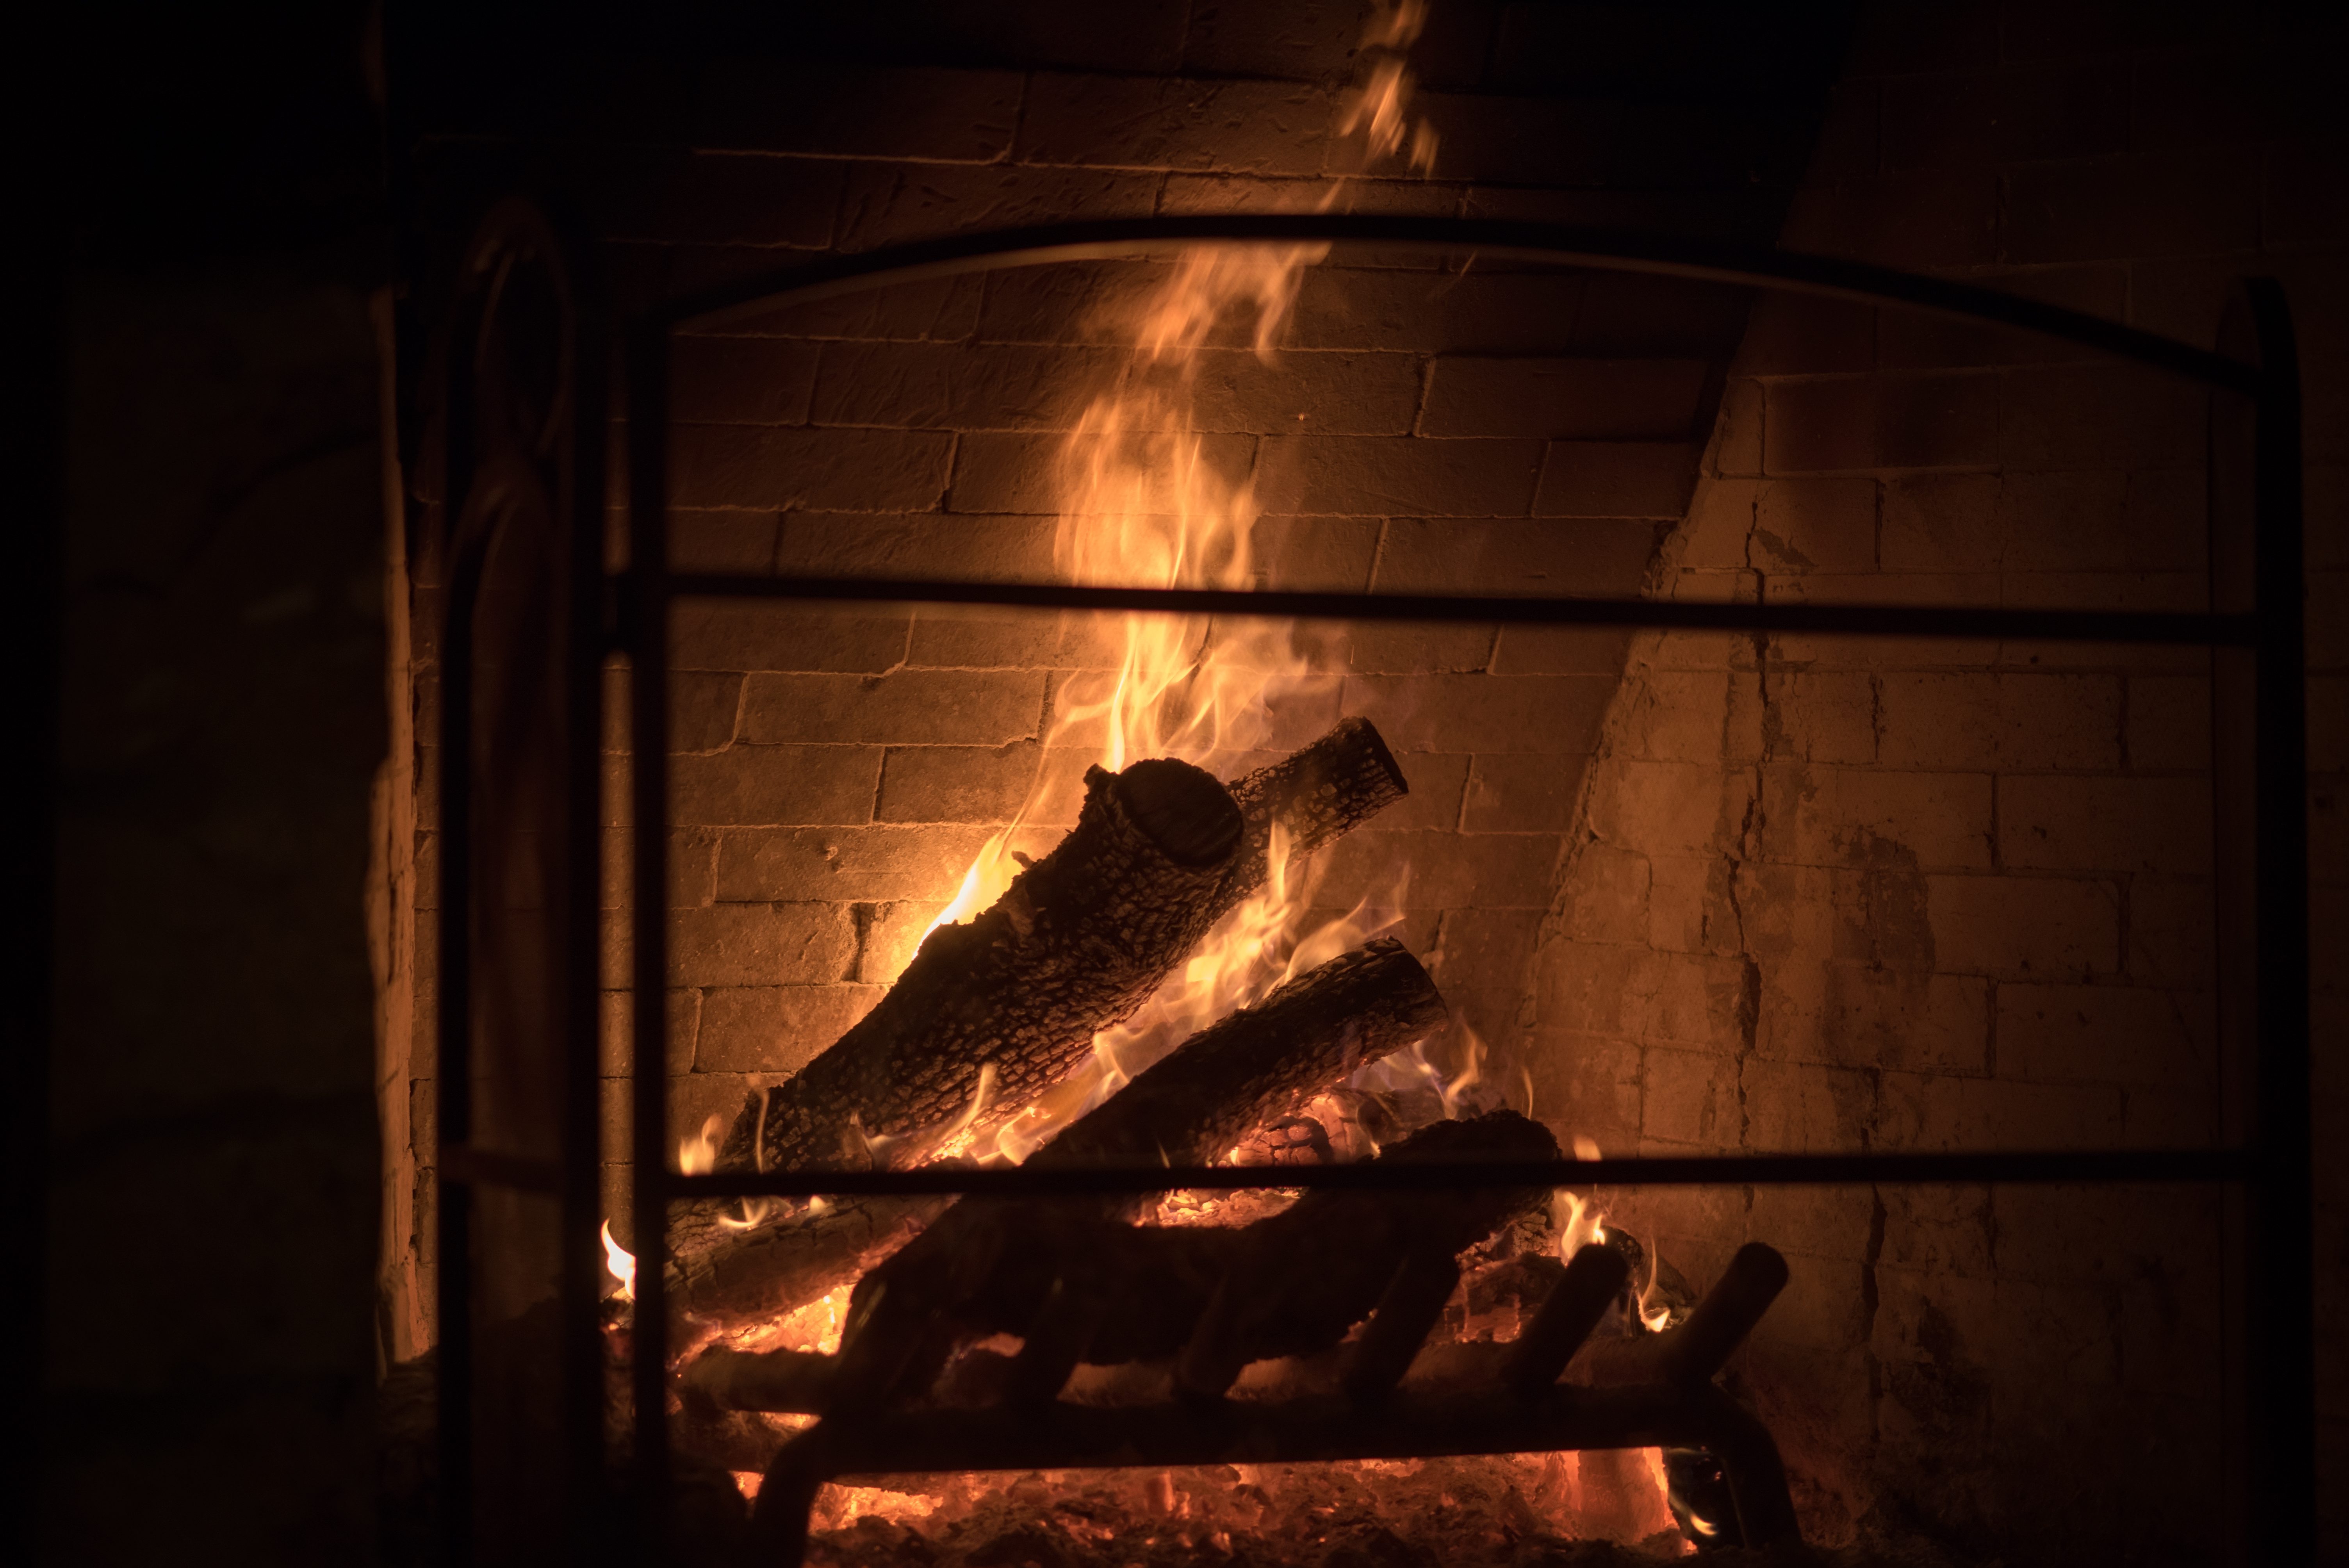 New Braunfels Gruene Gristmill fire fireplace photographer